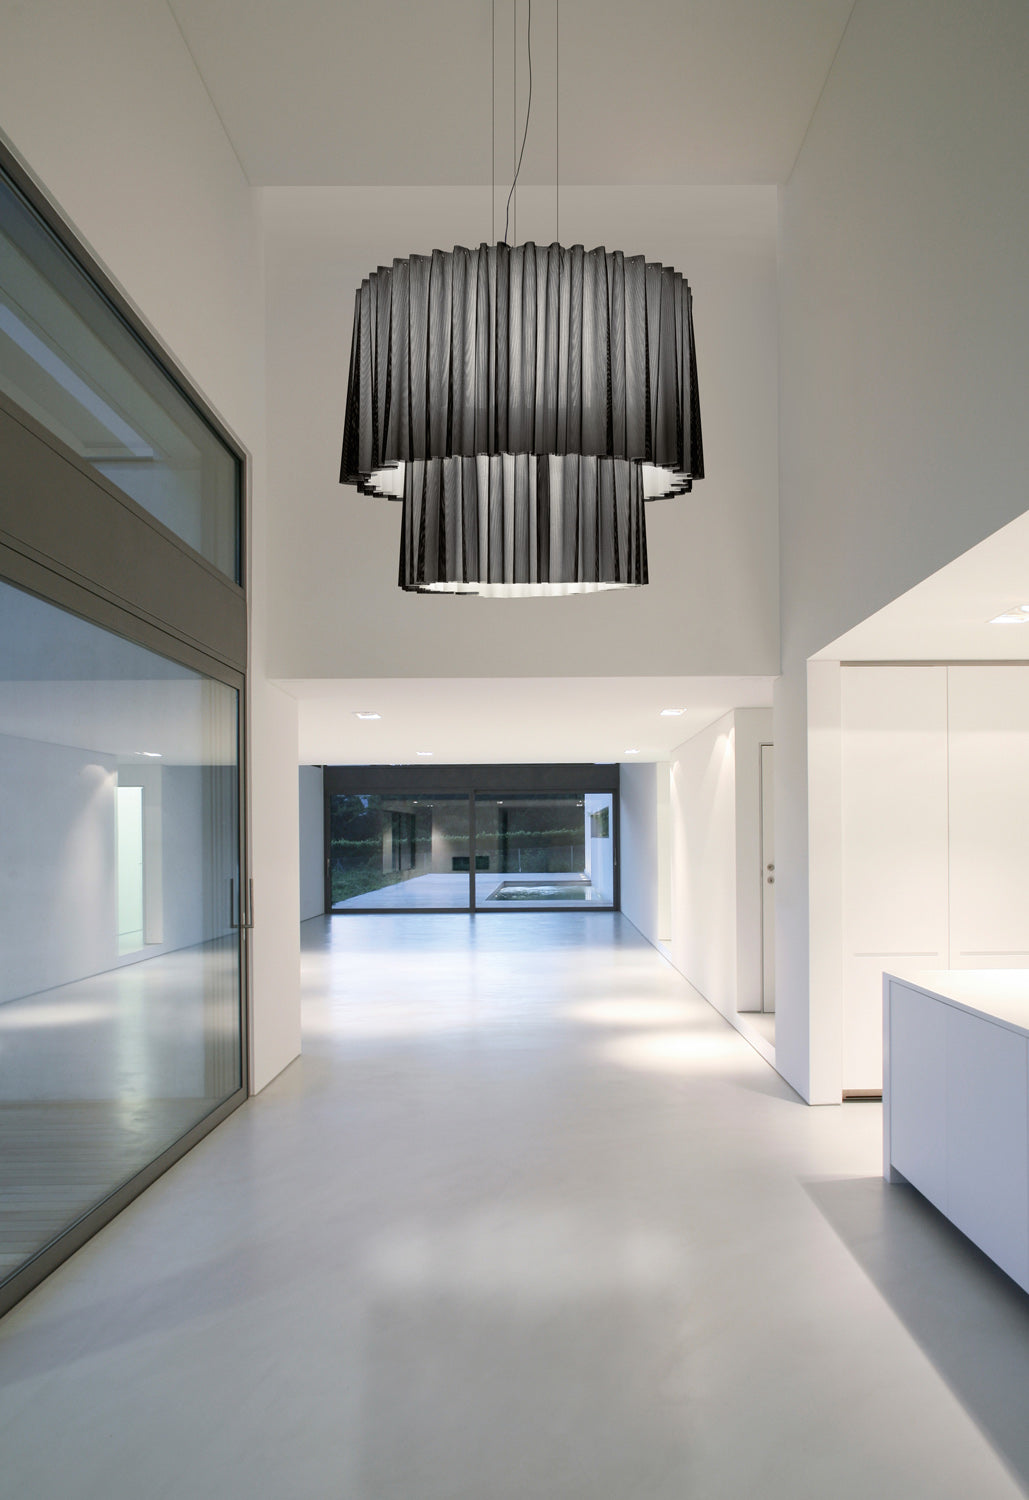 Two tiered Axo Light Skirt 150 |Large Italian designer suspended light —  italian-lighting-centre